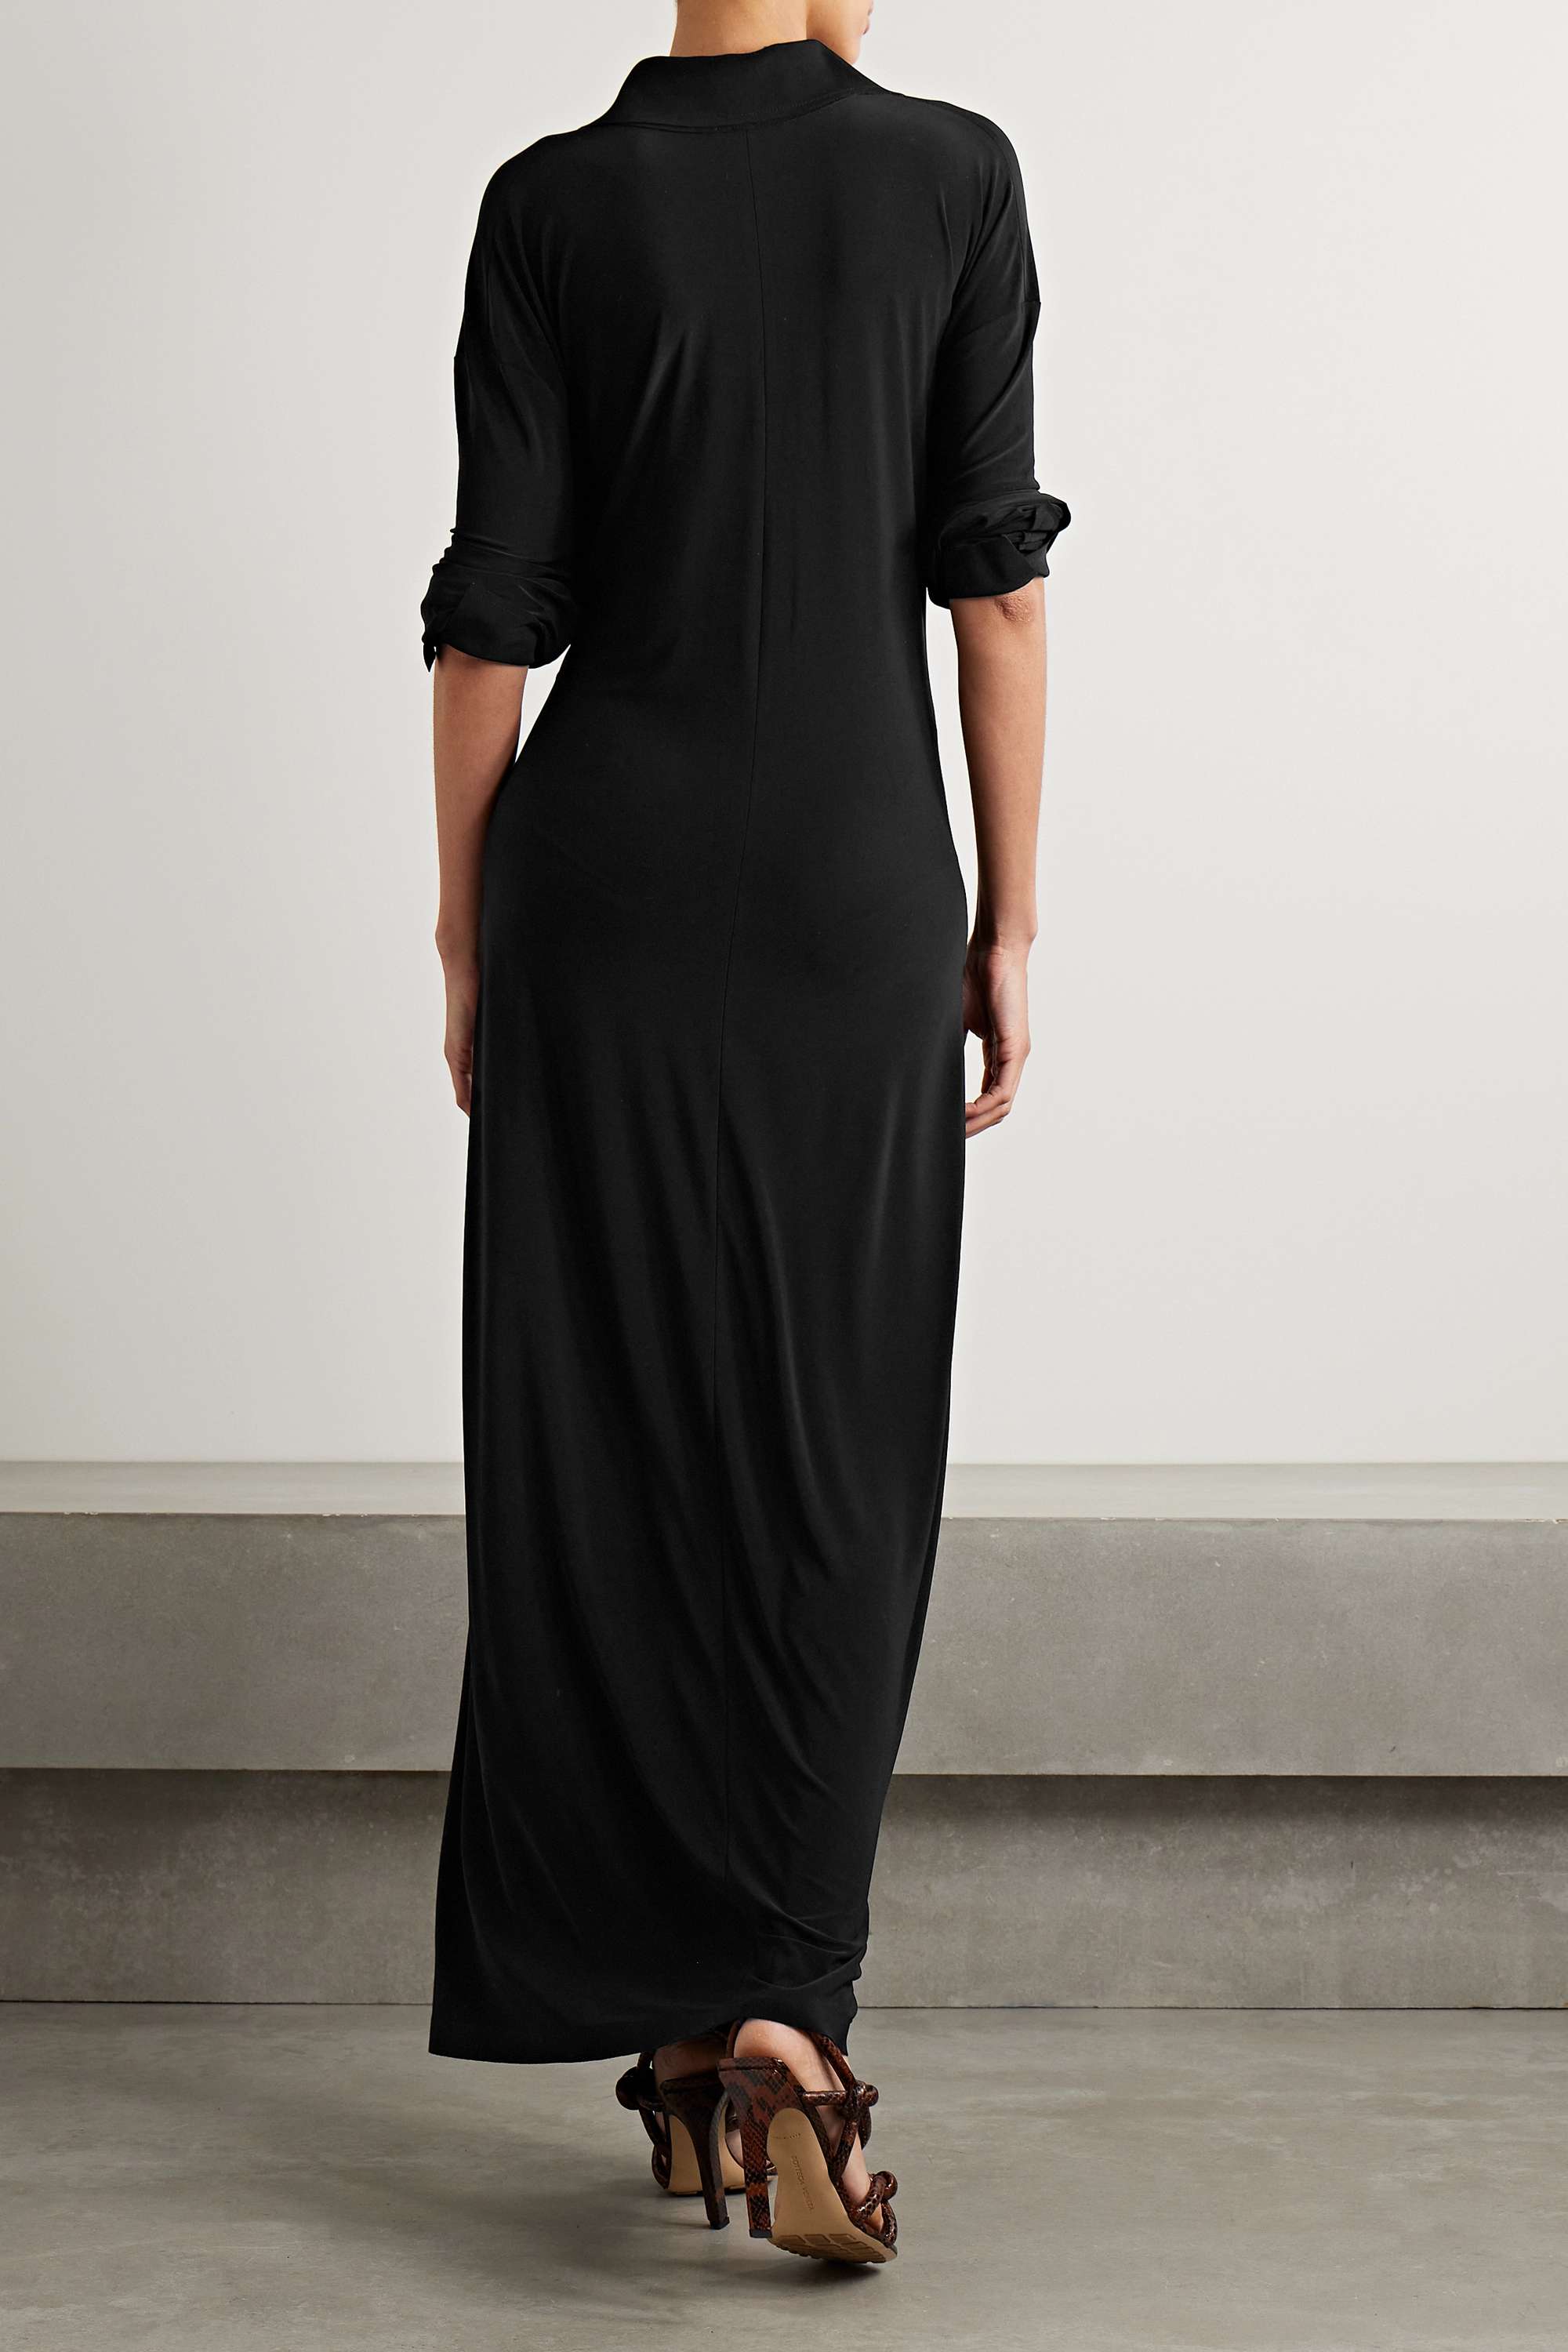 NORMA KAMALI Платье макси из эластичного джерси с завязками спереди, черный norma kamali длинное платье